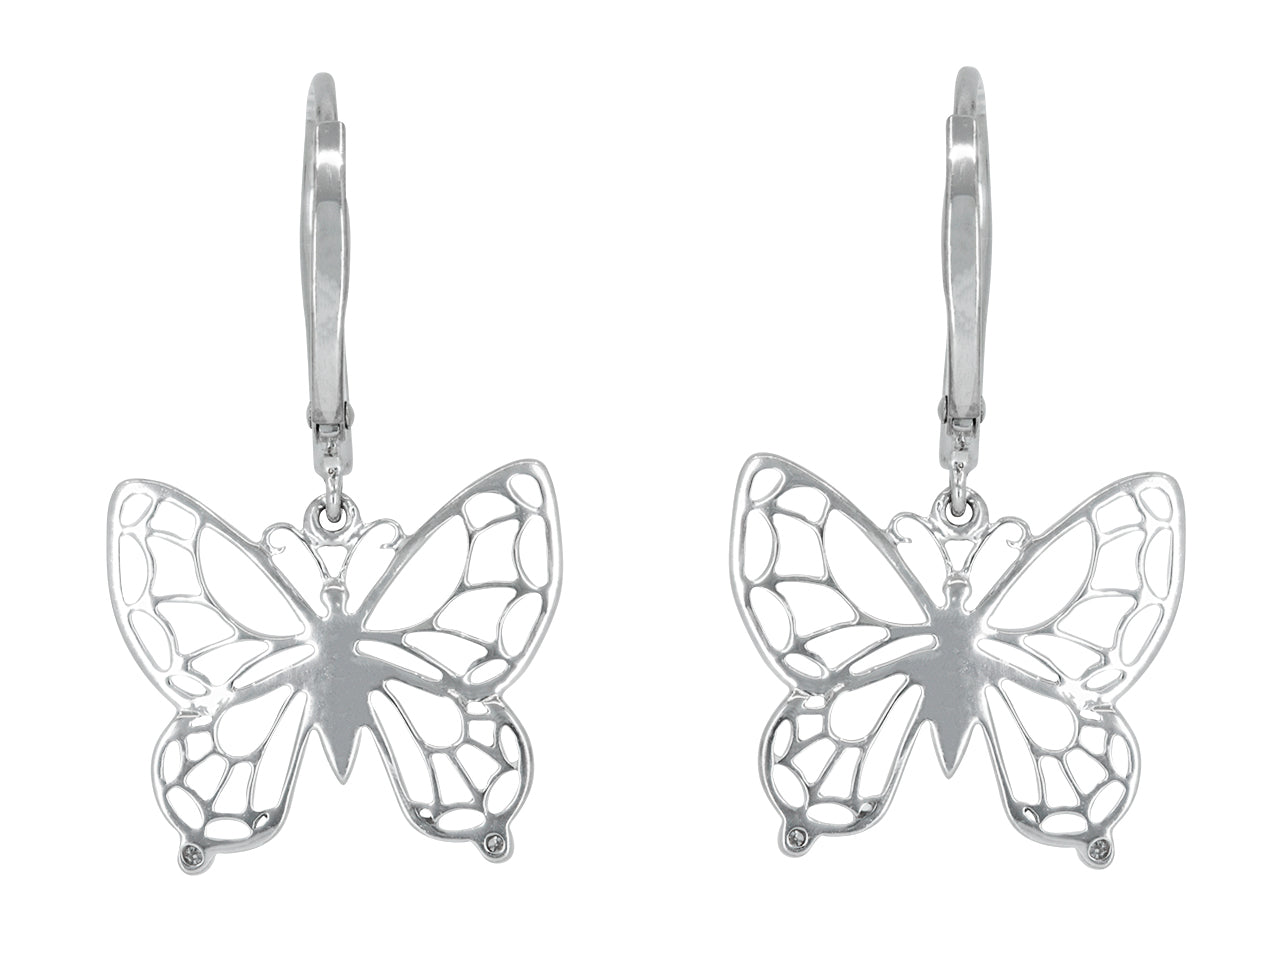 Rhonda Faber Green Diamond Butterfly Earrings in 18K White Gold